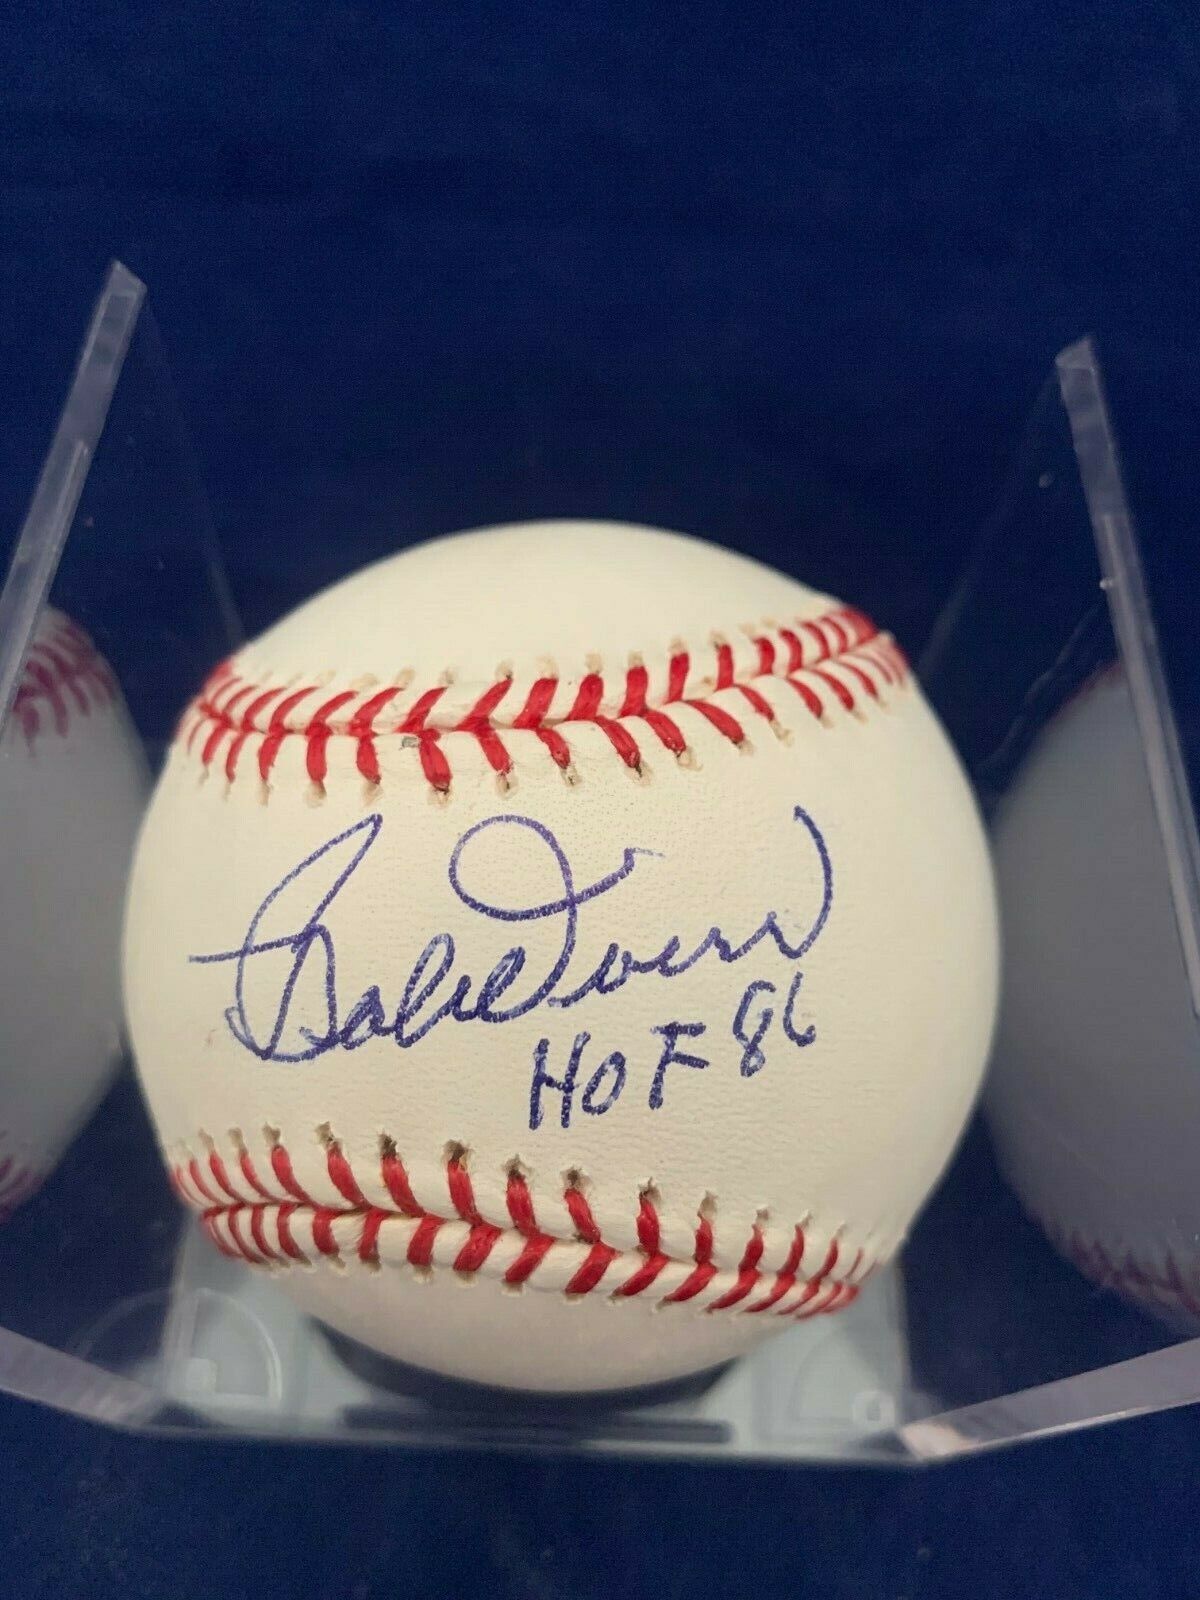 Bobby Doerr Signed Selig Baseball HOF 86 Inscription with JSA COA